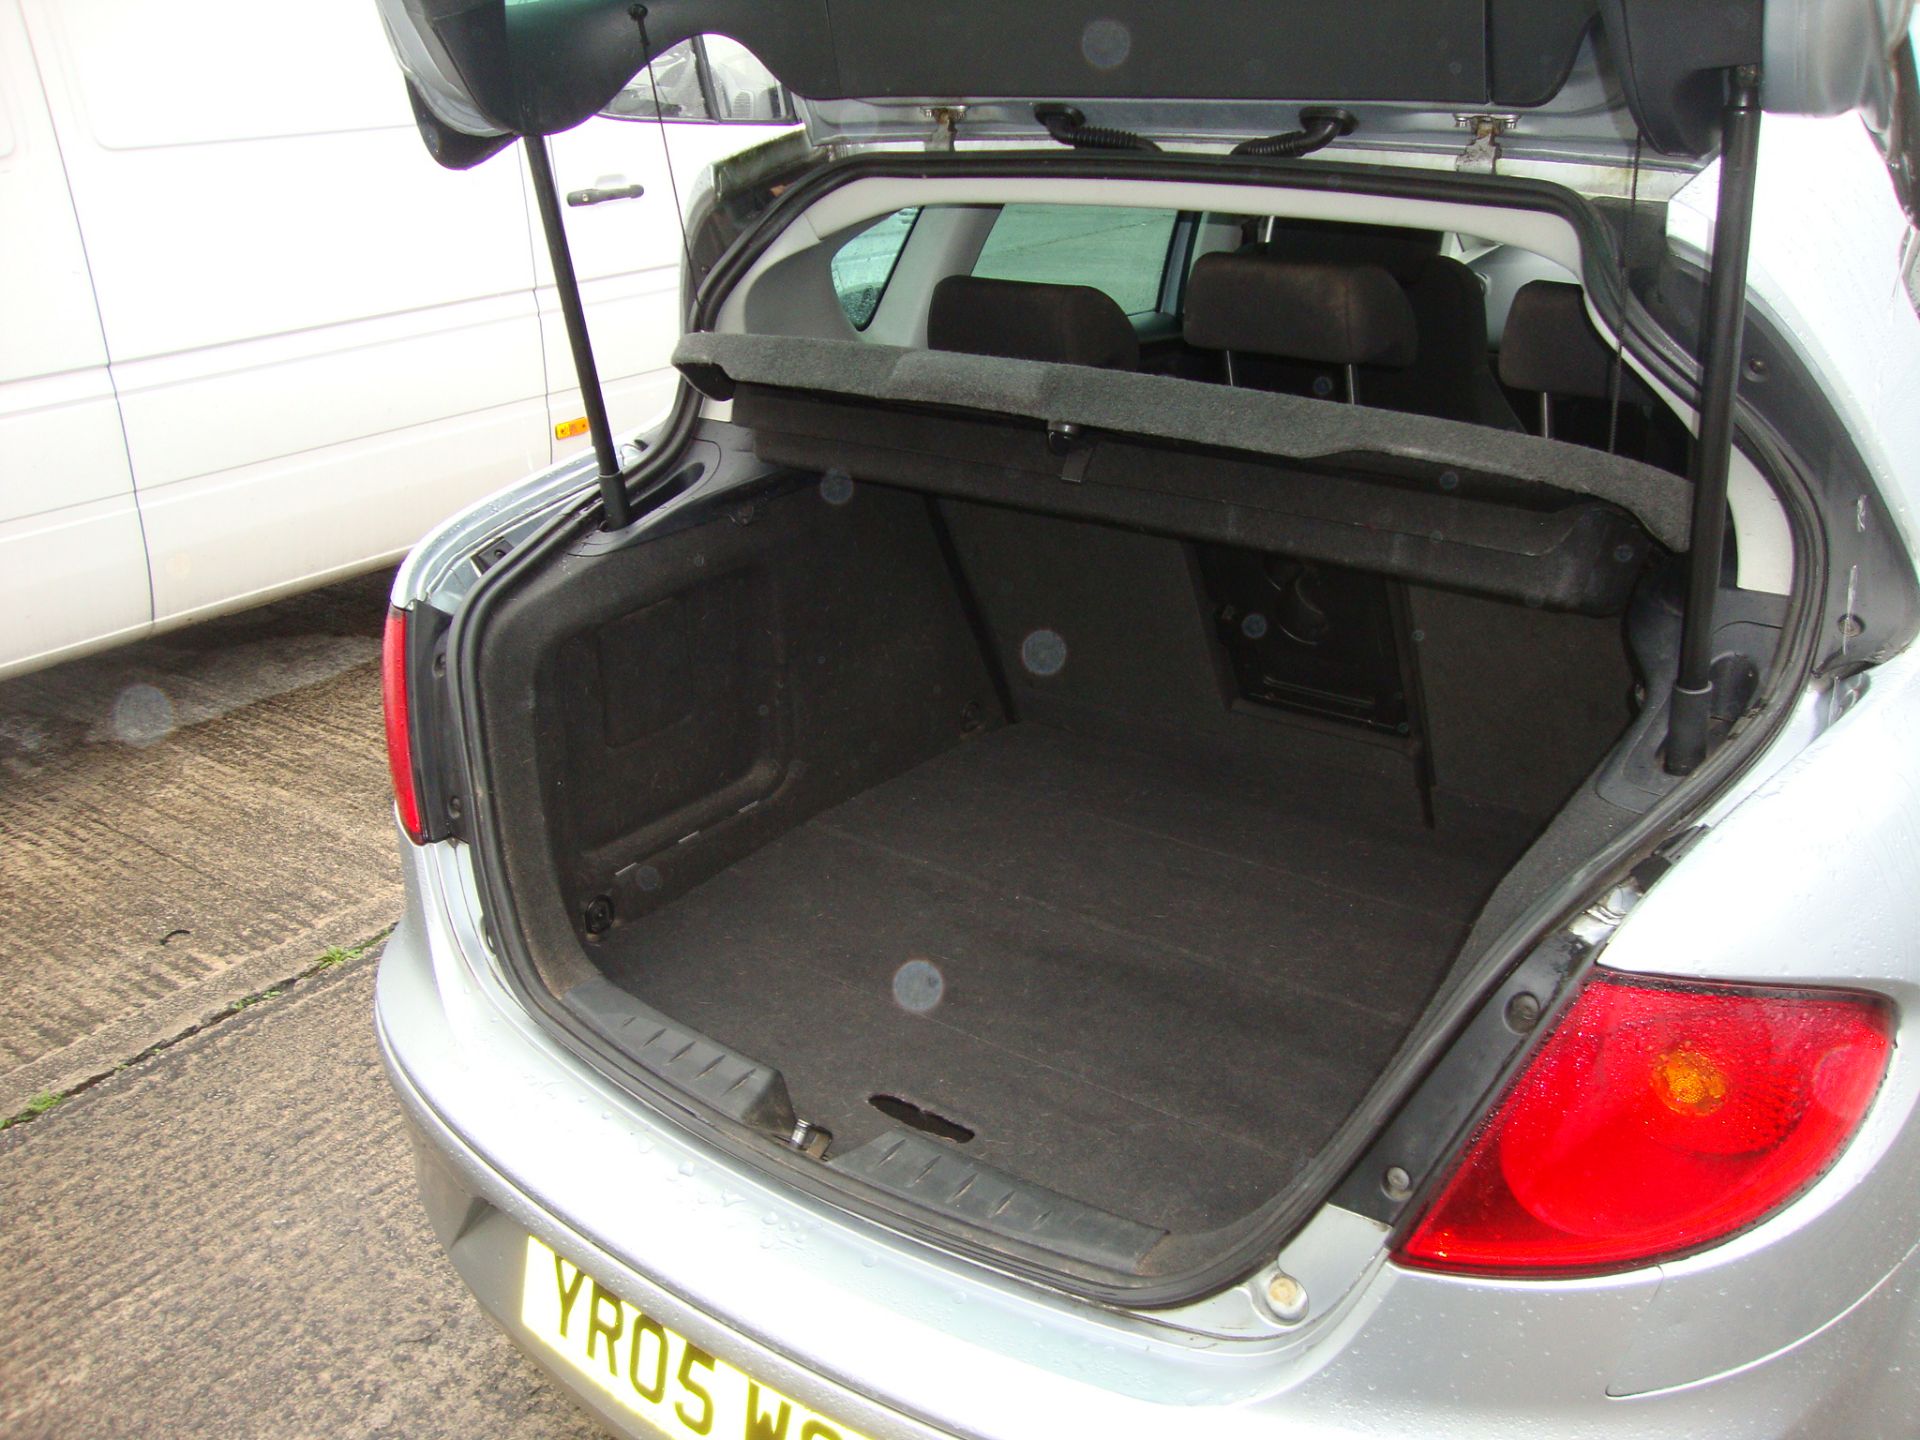 YR05 WSY Seat Toledo Sport FSI 5-door hatchback - Image 11 of 12